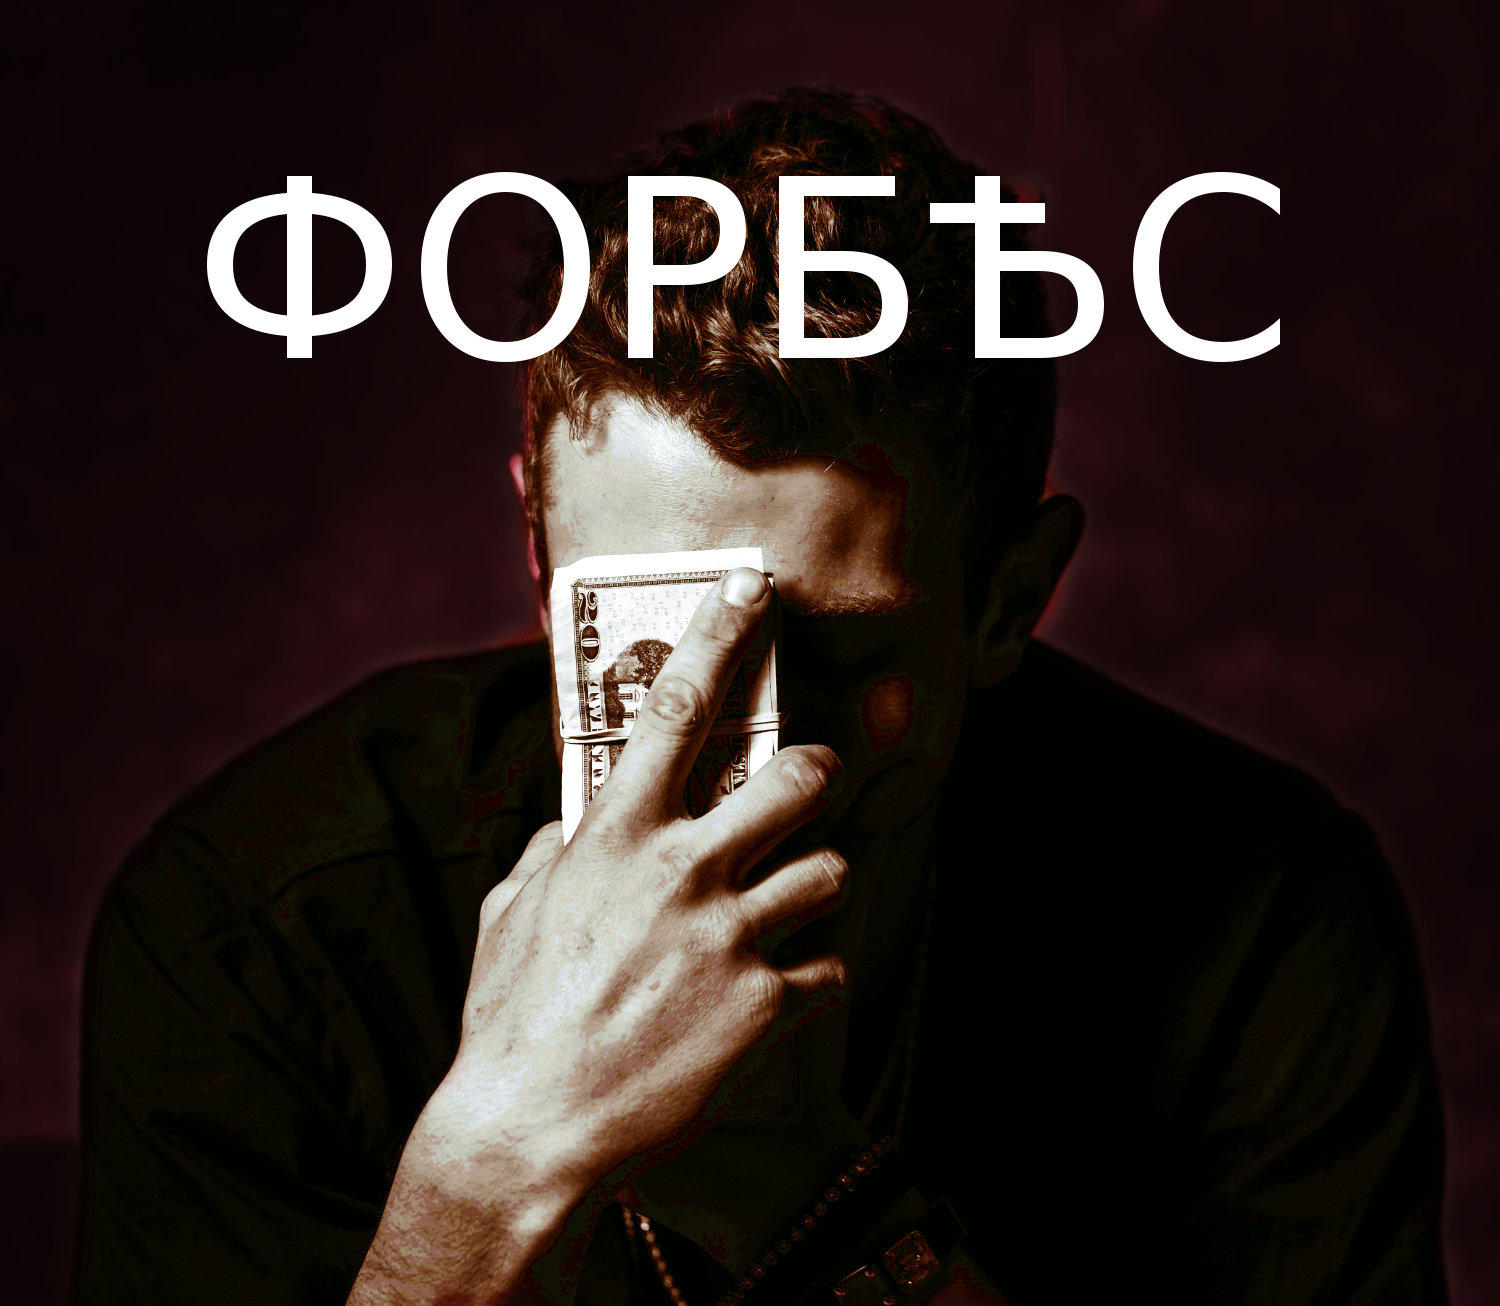 "Український" Forbes 2.0: Закінчився, не почавшись? 5